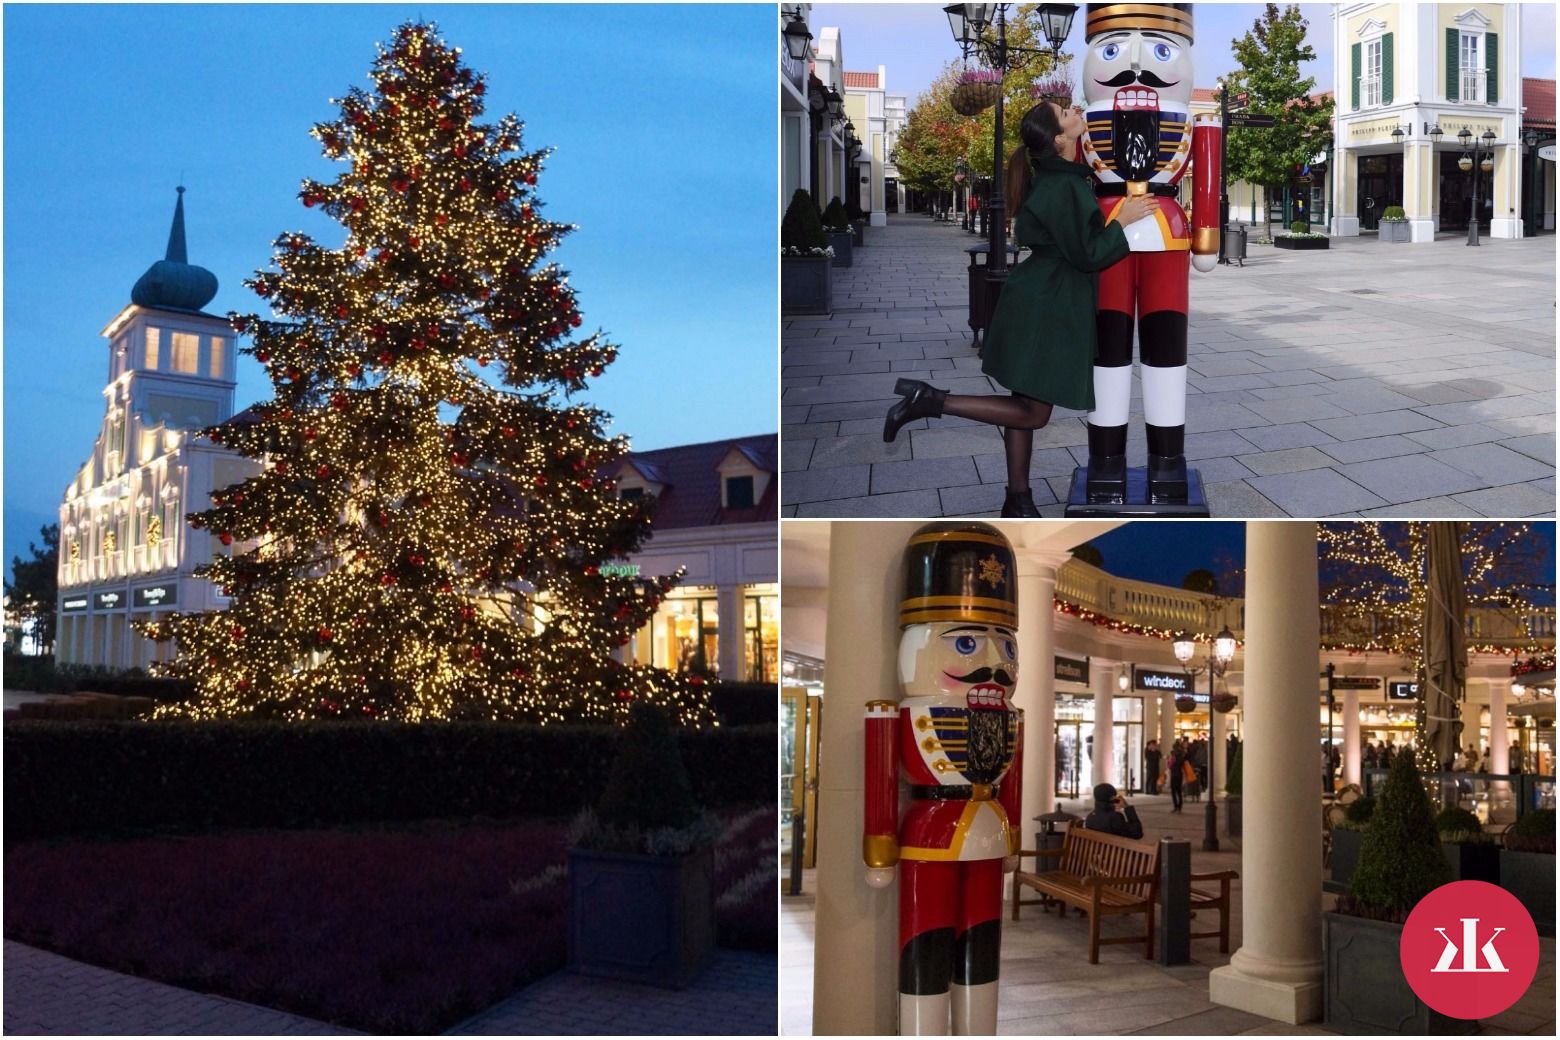 Vianočným Late Night Shoppingom dňa 9. novembra oslavuje McArthurGlen Designer Outlet Parndorf štart do vianočnej nákupnej sezóny.